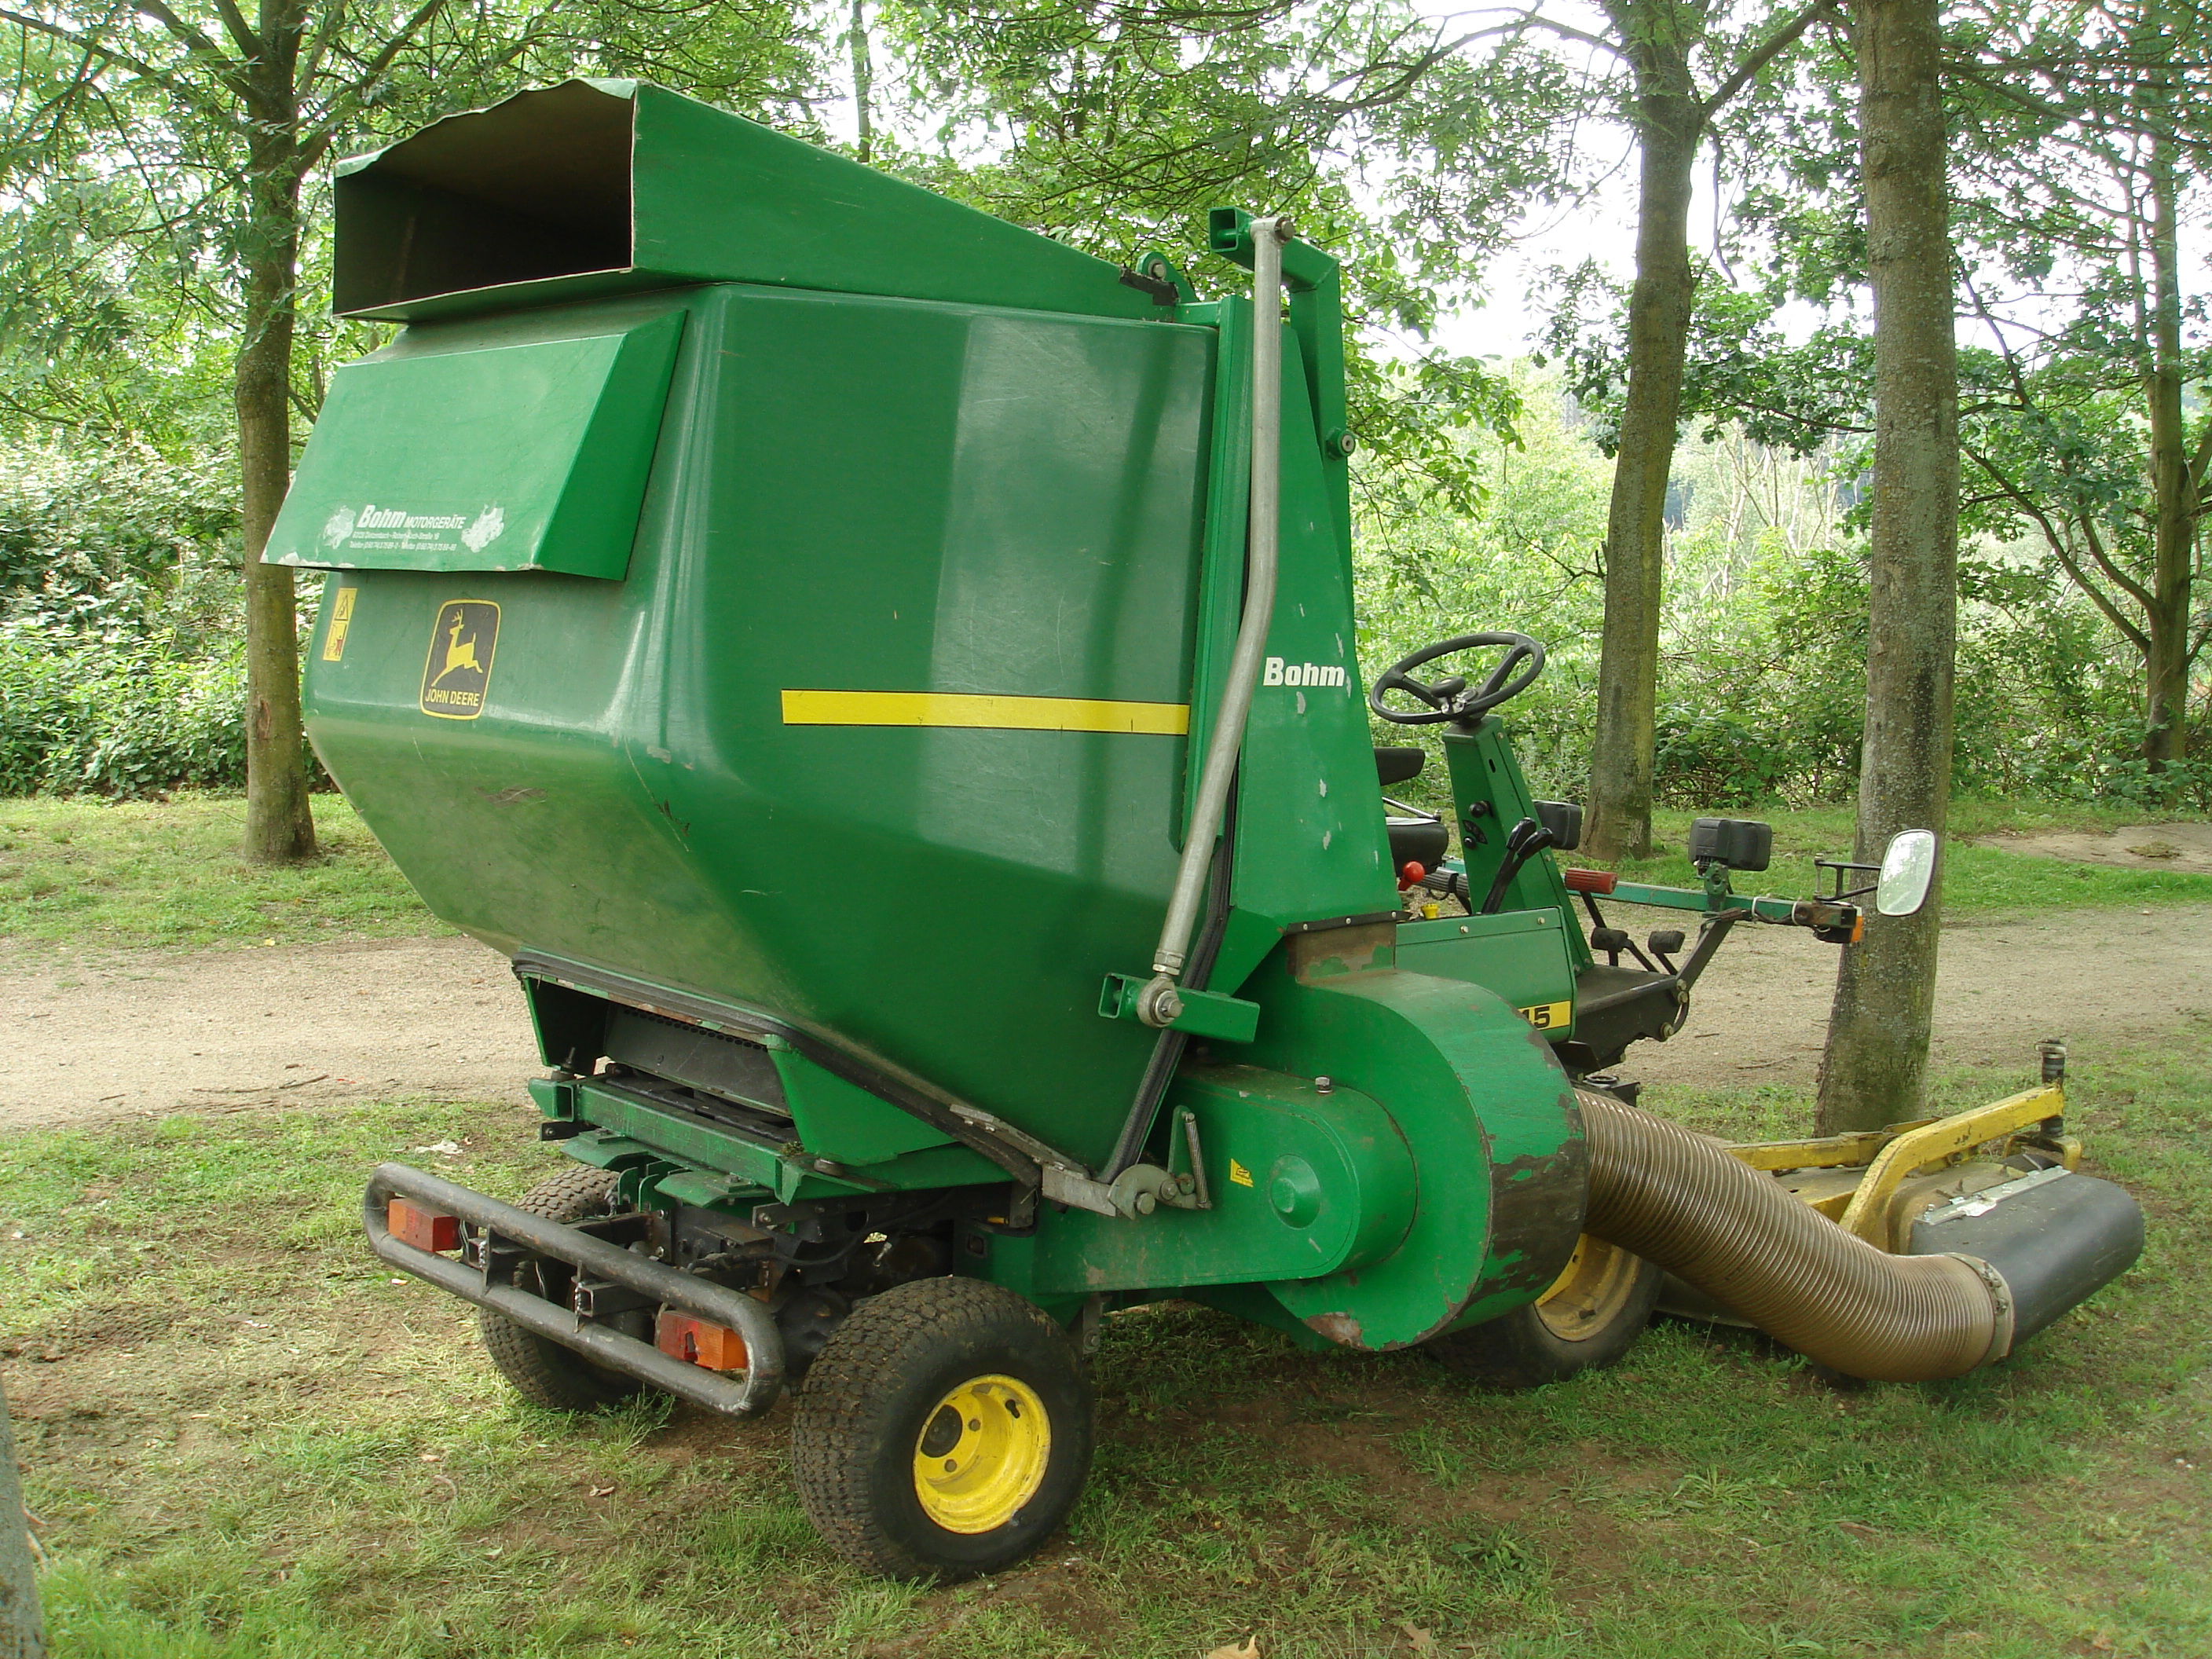 File:John Deere Tractor Lawnmower F1145 1.jpg - Wikimedia Commons